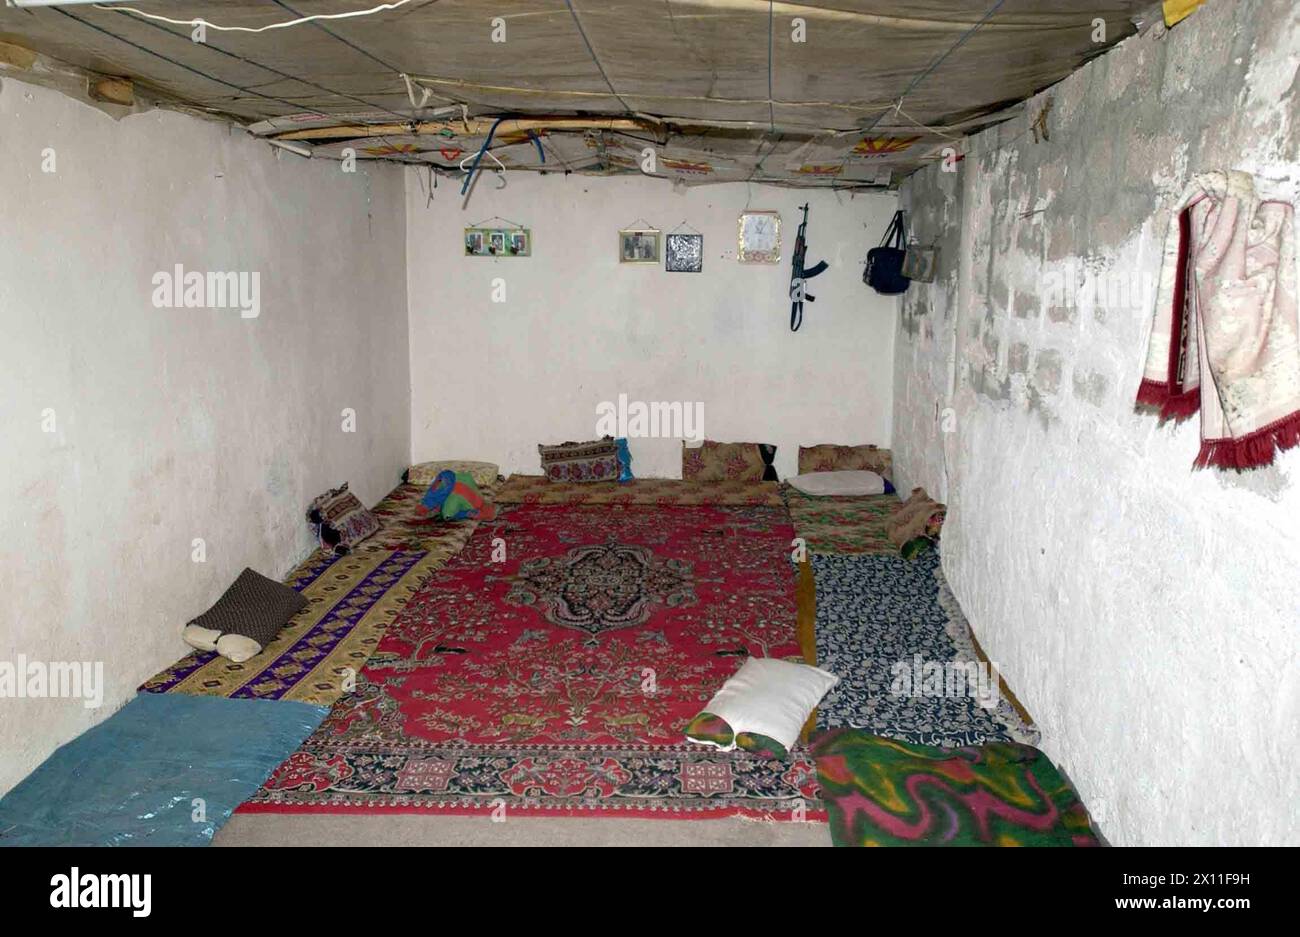 Esta habitación de 8x16, ubicada en un edificio público cerca de Dahuk, sirve como el dormitorio de una familia de ocho, que es típico de las condiciones en muchas de las áreas de vivienda temporal ca. 05 de junio de 2004 Foto de stock